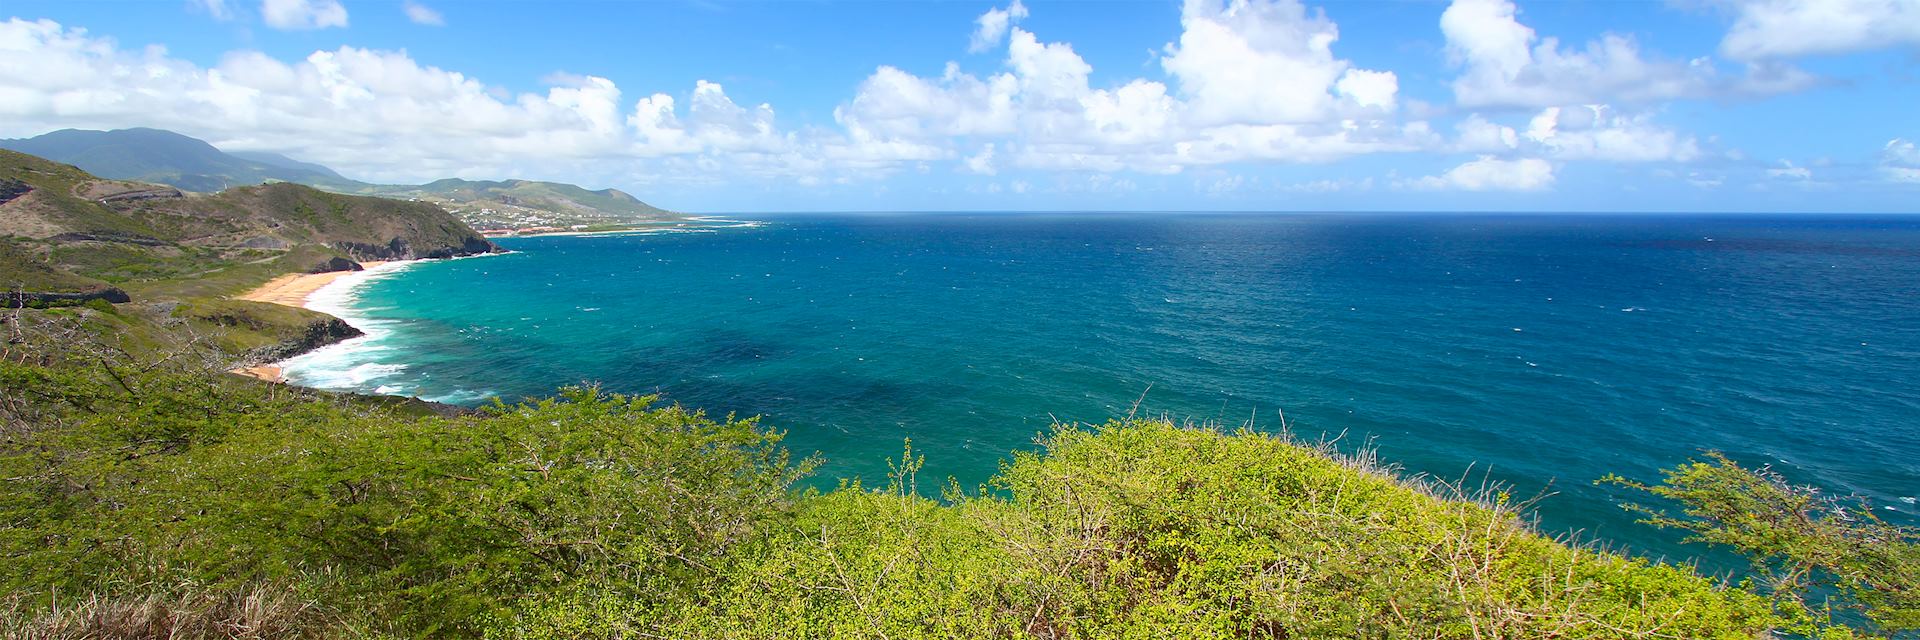 Saint Kitts coastline, Saint Kitts and Nevis